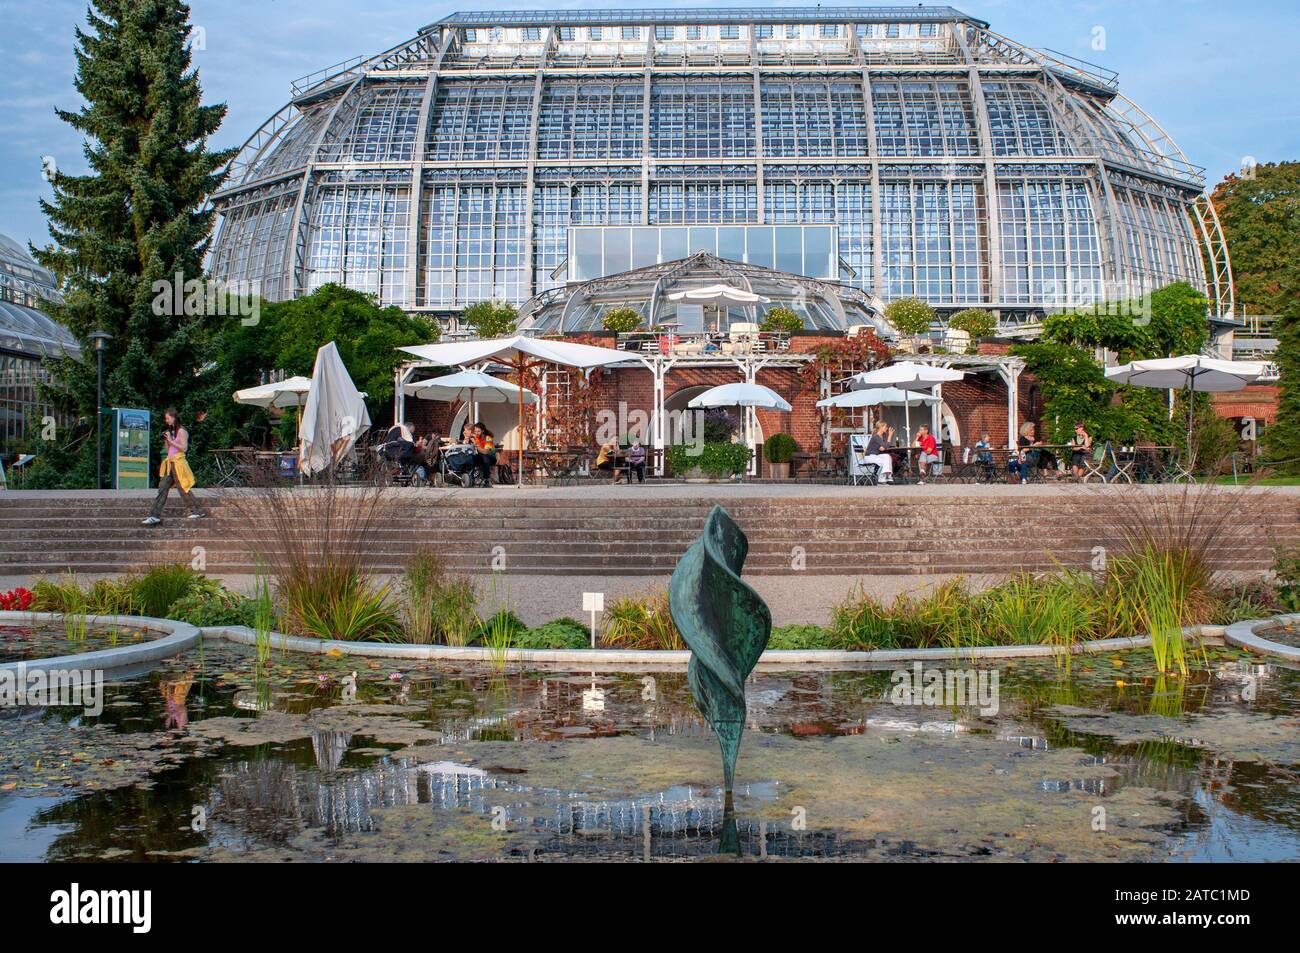 Glashaus Botanischer Garten oder Botanischer Garten Berlin, mit mehr als 43 ha der größte Botanische Garten Europas. Der größte tropische Greenhous Stockfoto